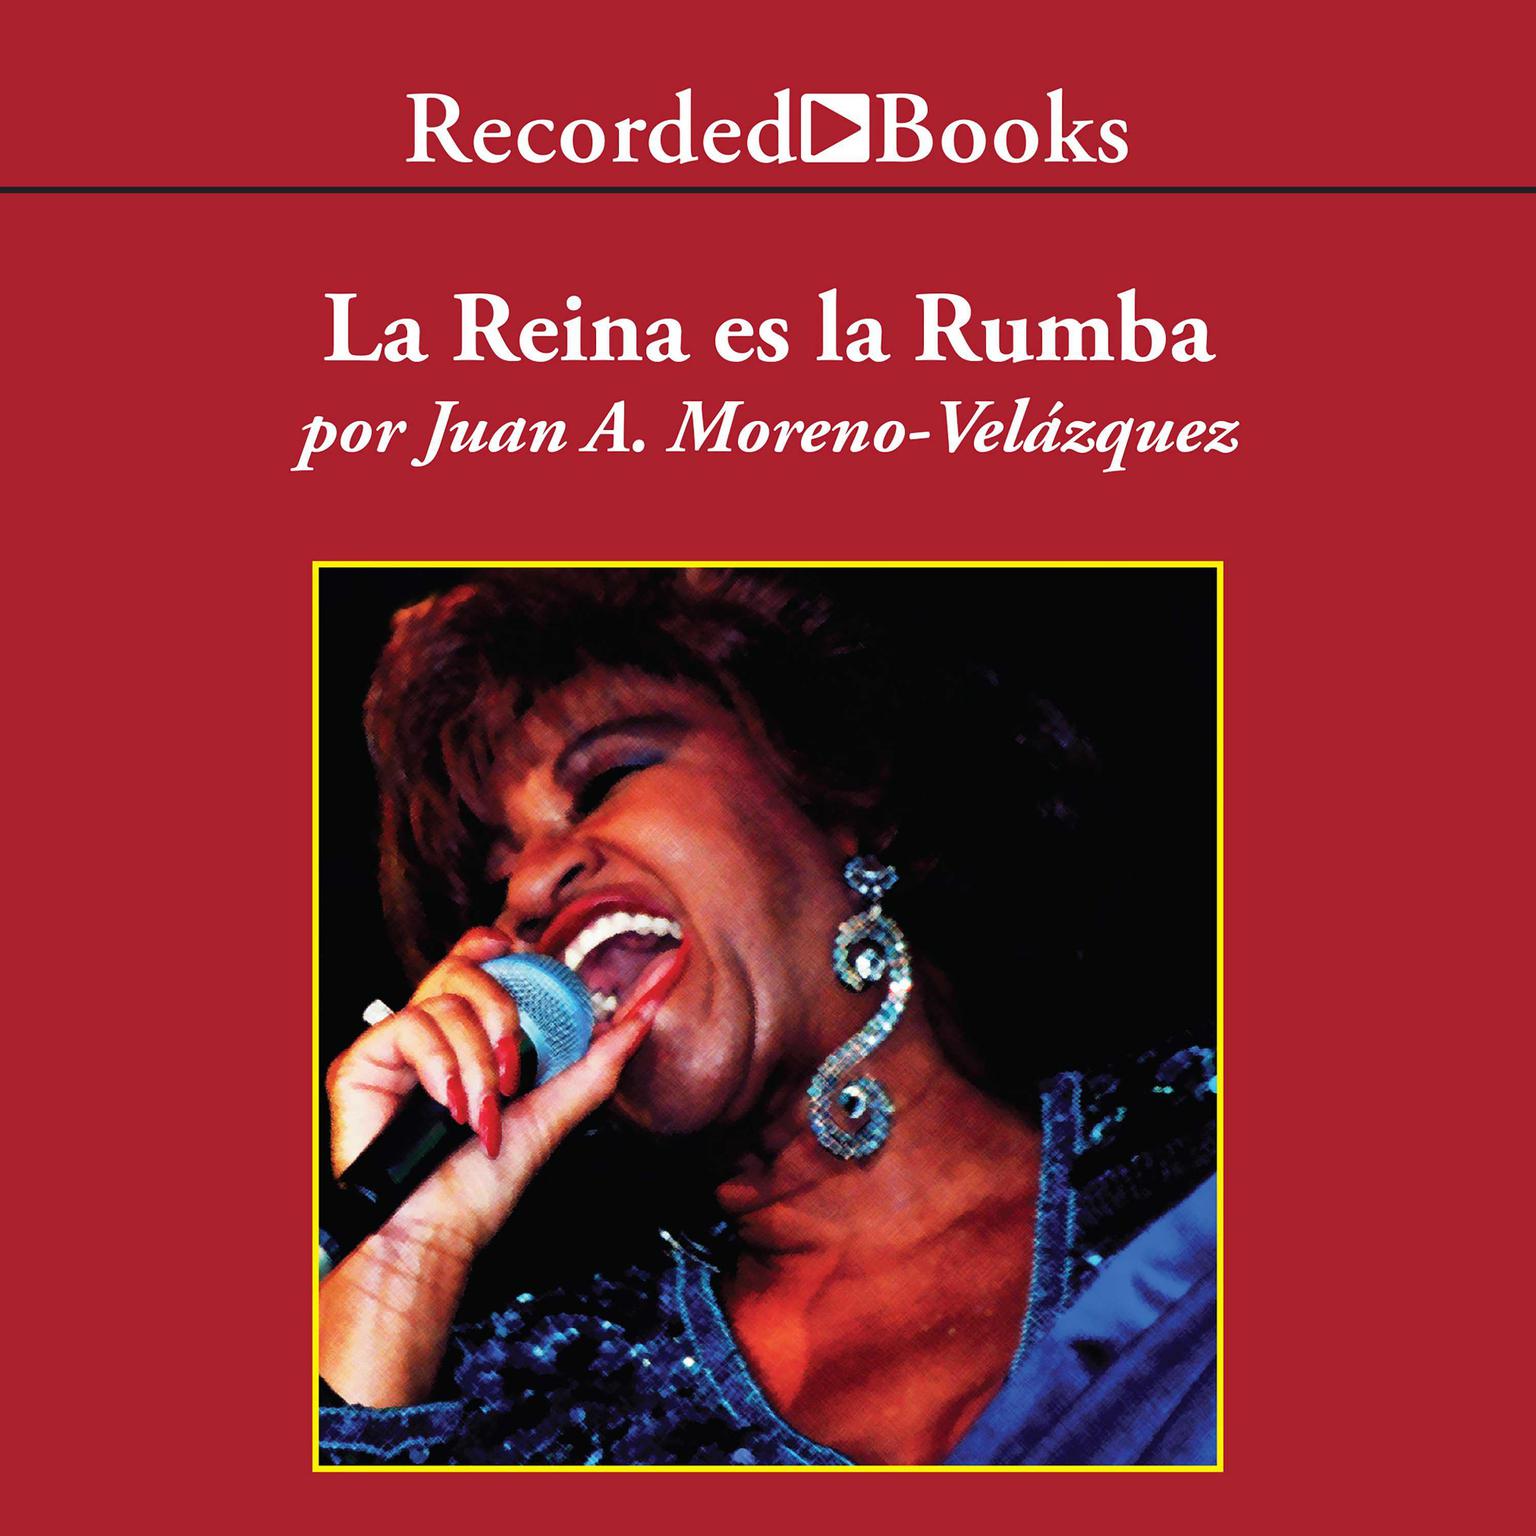 La reina es la rumba por siempre Celia (The Queen is the Rumba: Always Celia): Por siempre…Celia Audiobook, by Juan Moreno-Velázquez